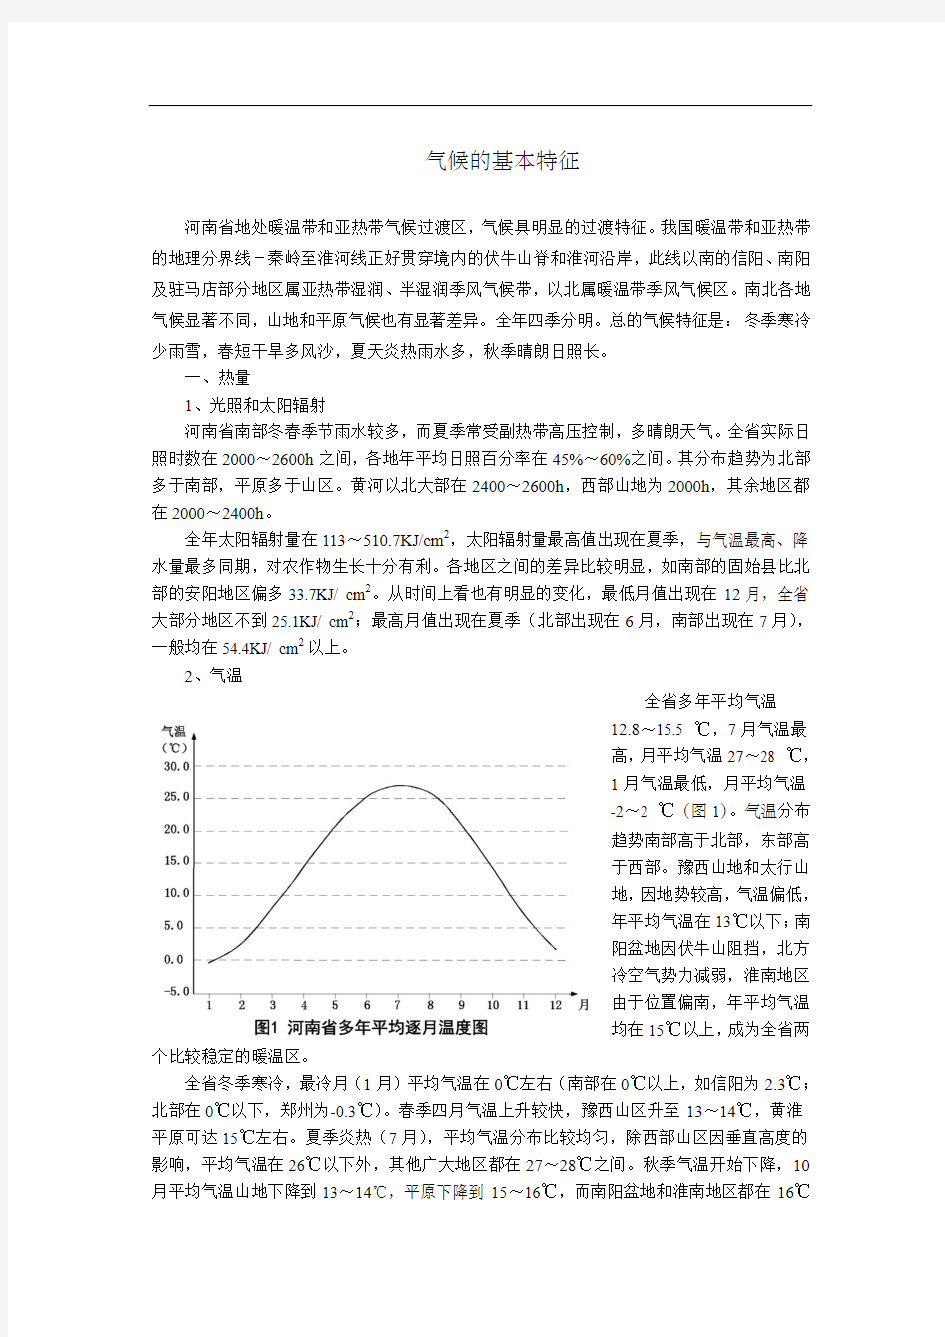 河南省气候的基本特征